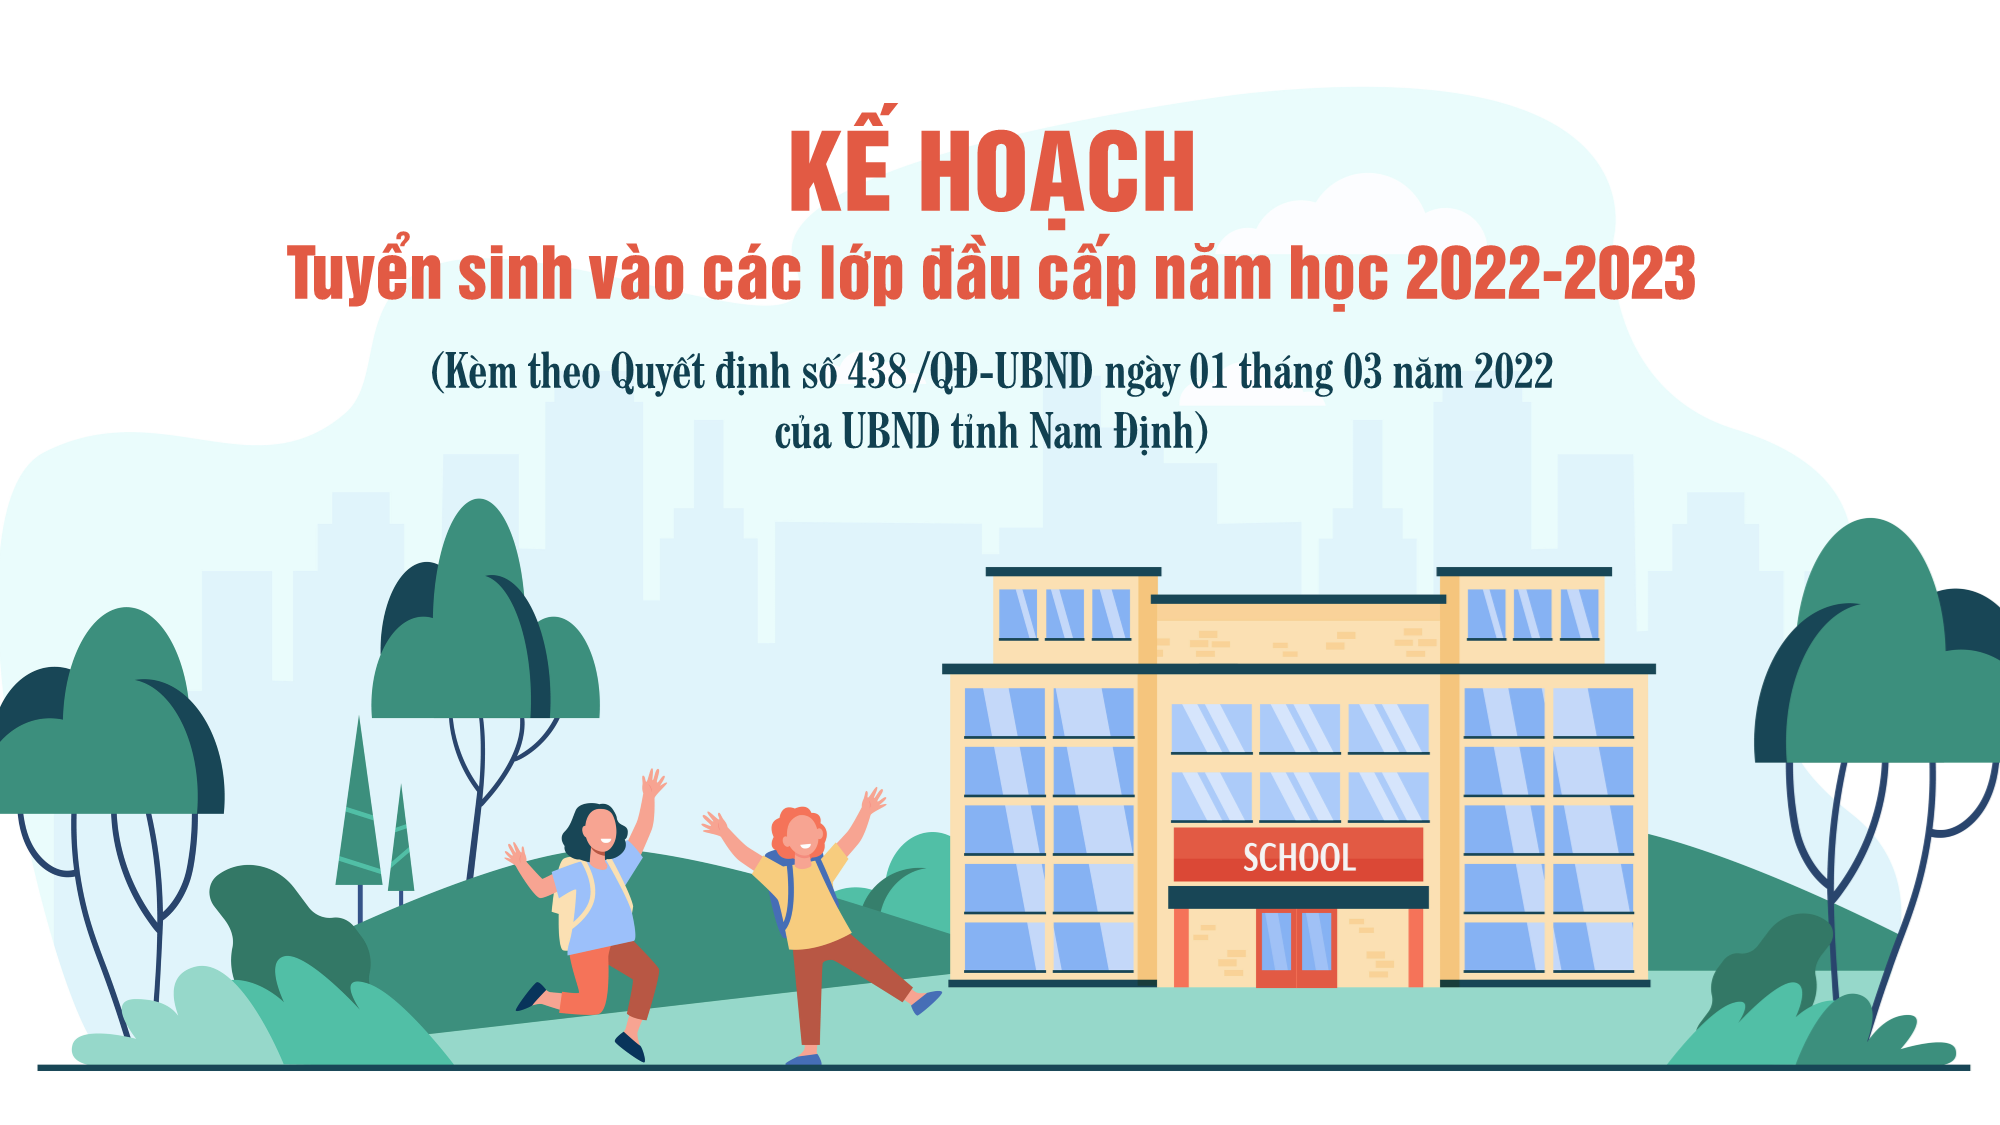 Kế hoạch tuyển sinh vào các lớp đầu cấp năm học 2022-2023